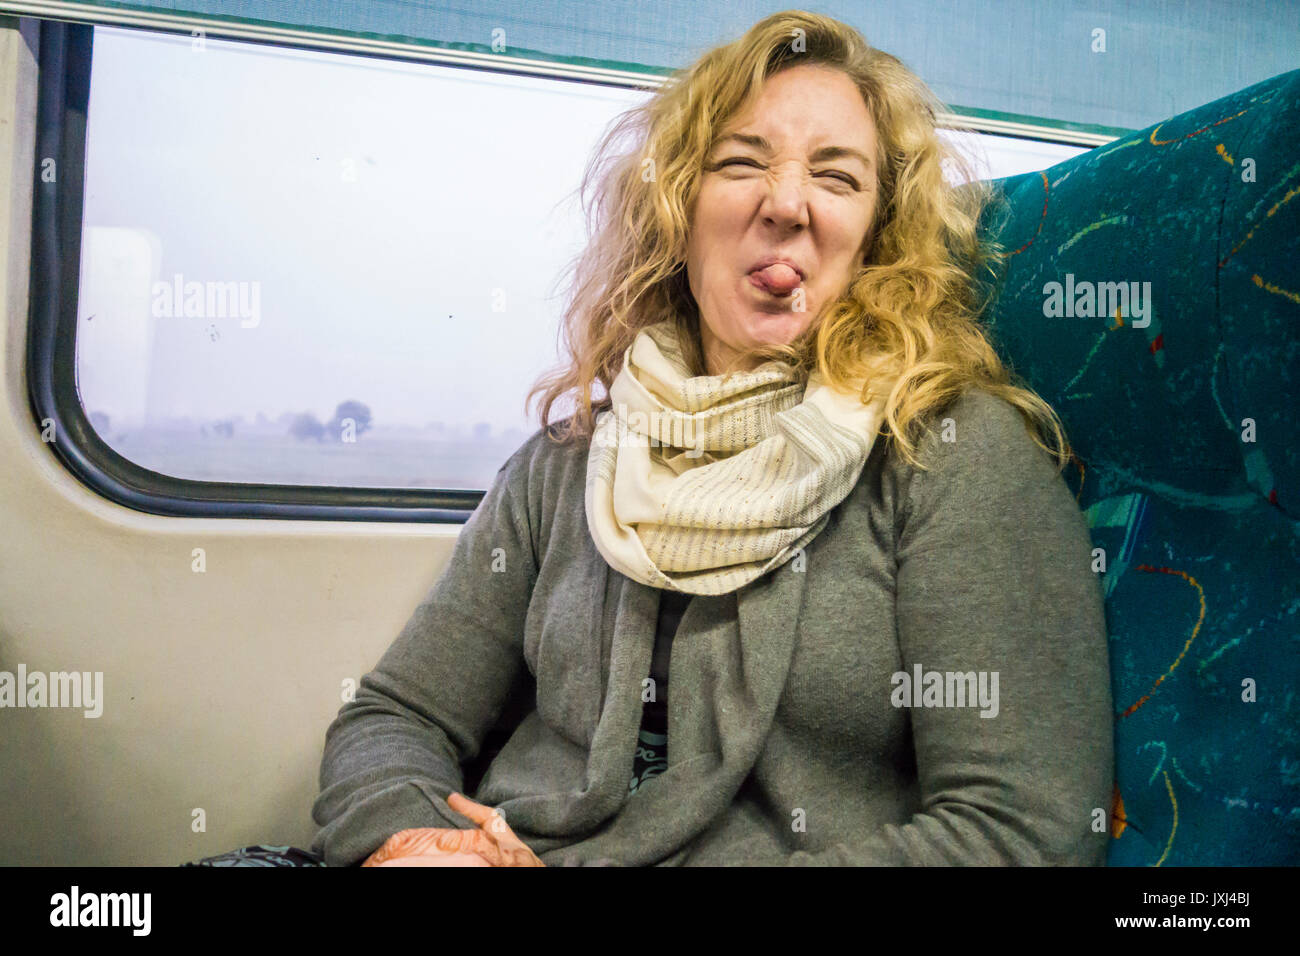 Una donna fuori la sua lingua alla persona che ha preso la foto durante la guida su un treno. Foto Stock